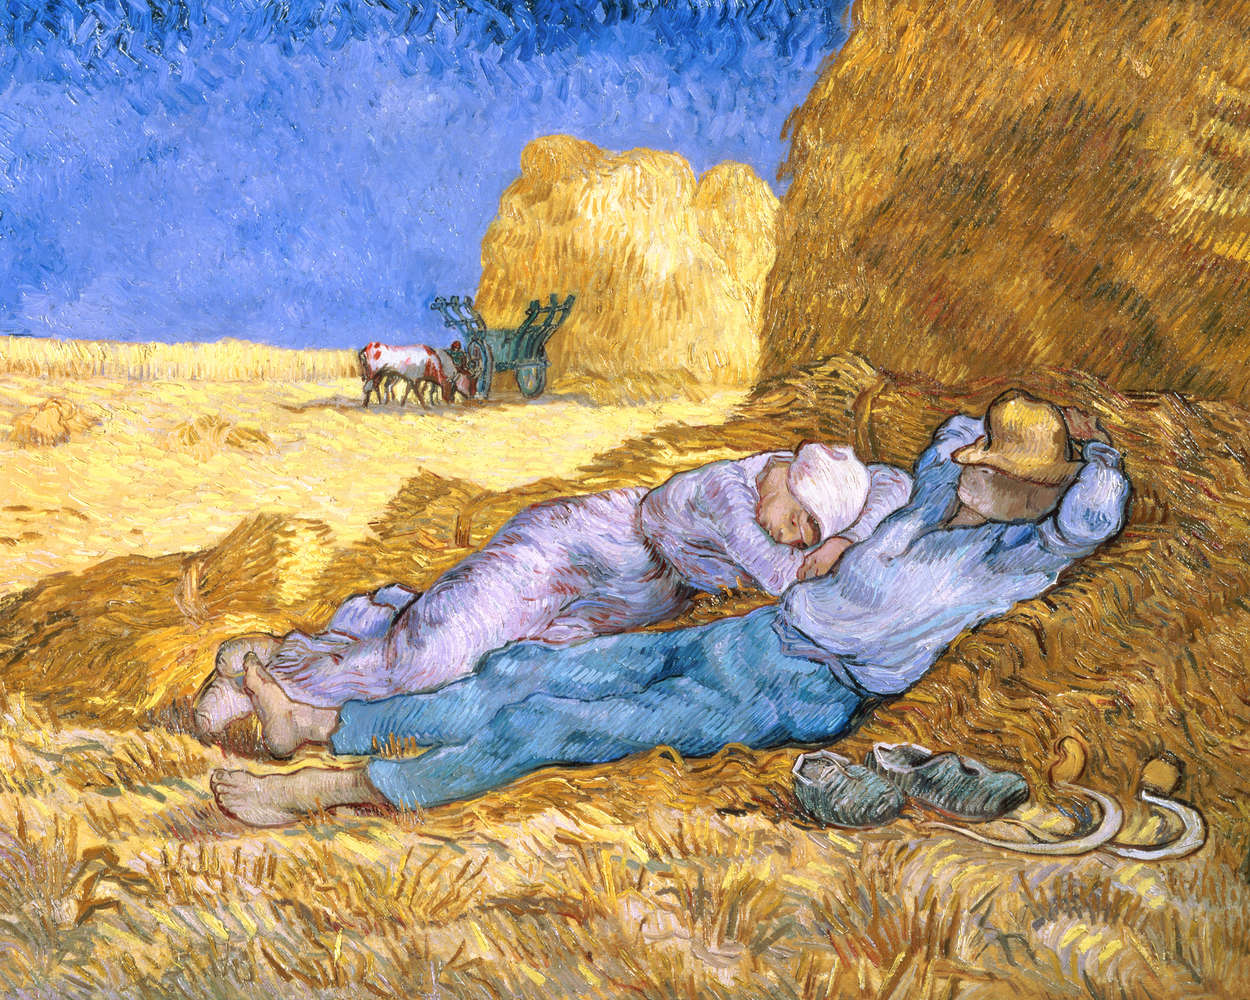             Papier peint panoramique "La sieste selon Millet" de Vincent van Gogh
        